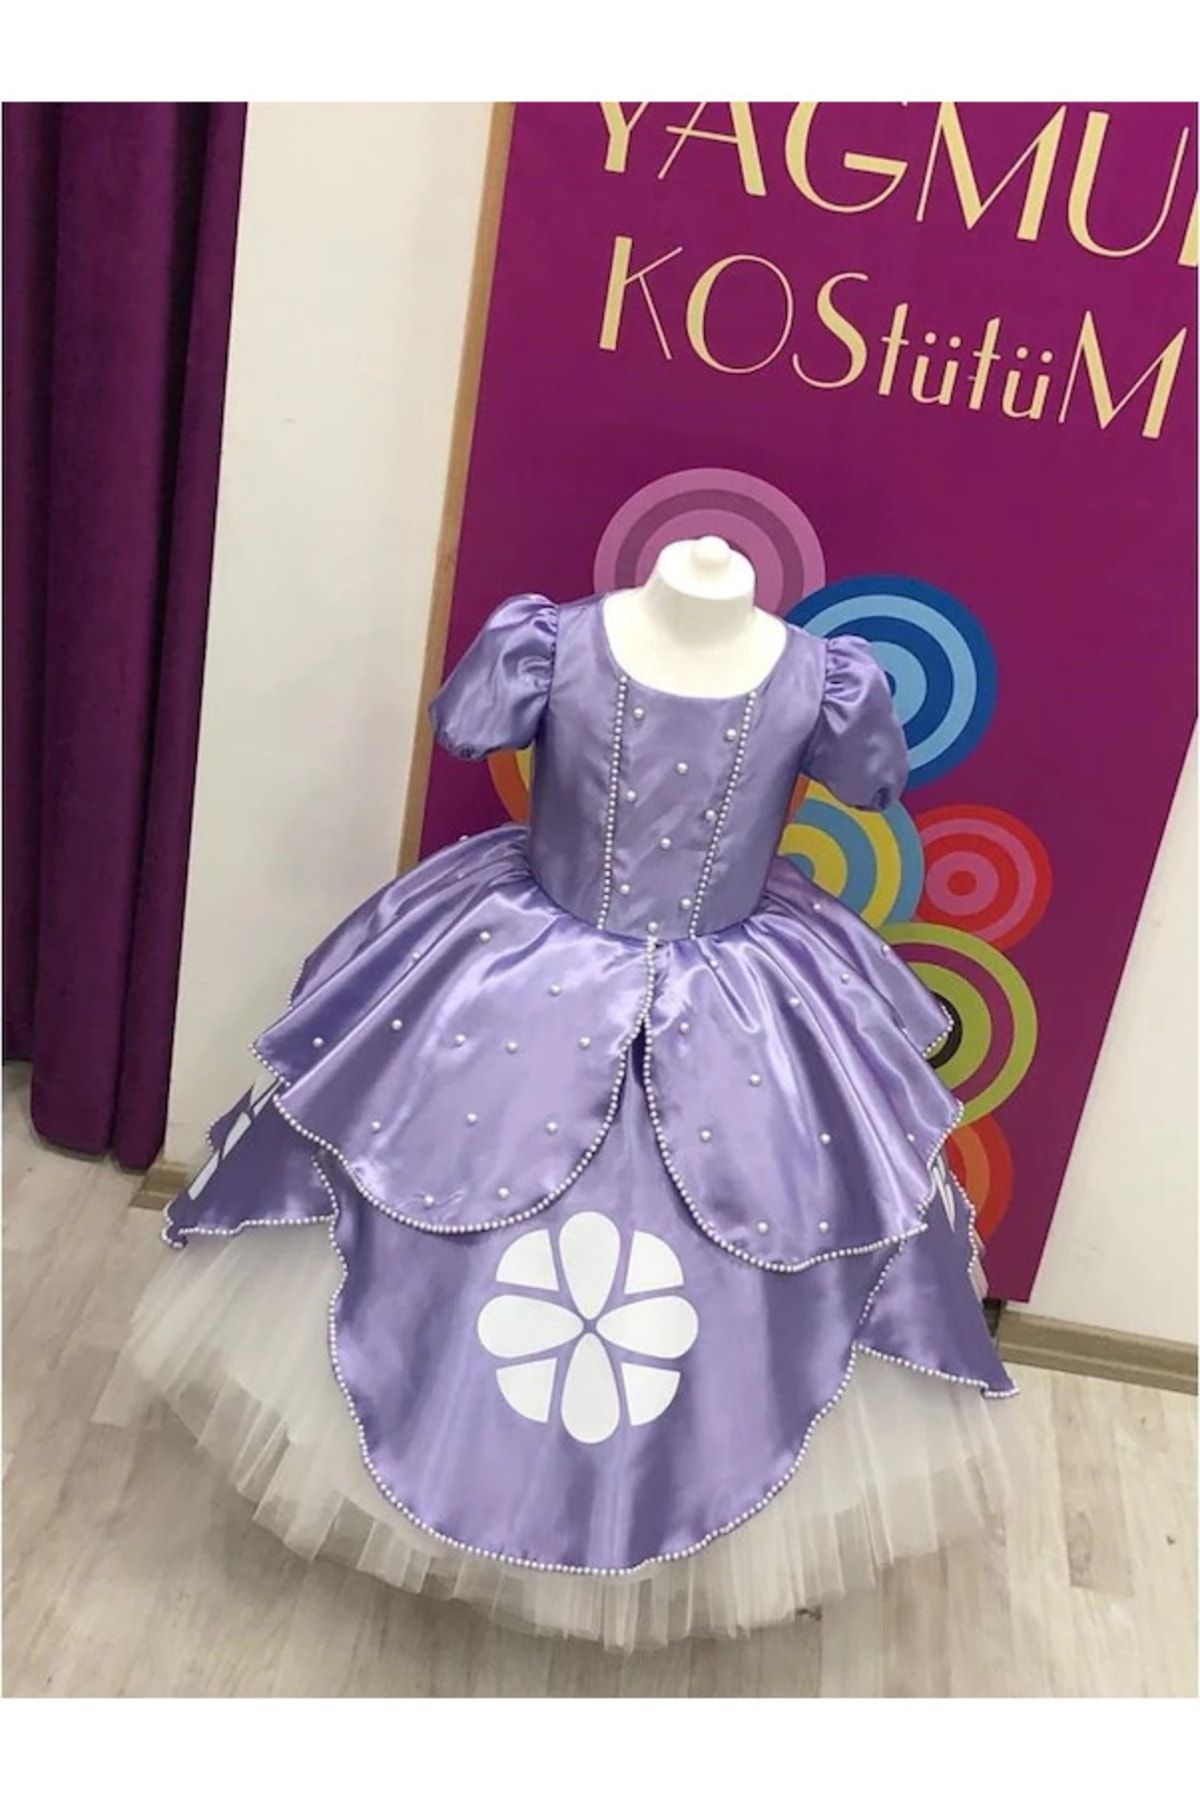 YAĞMUR KOStütüM Prenses Sofia Model Kız Çocuk Doğumgünü Elbisesi & Parti Kostümü